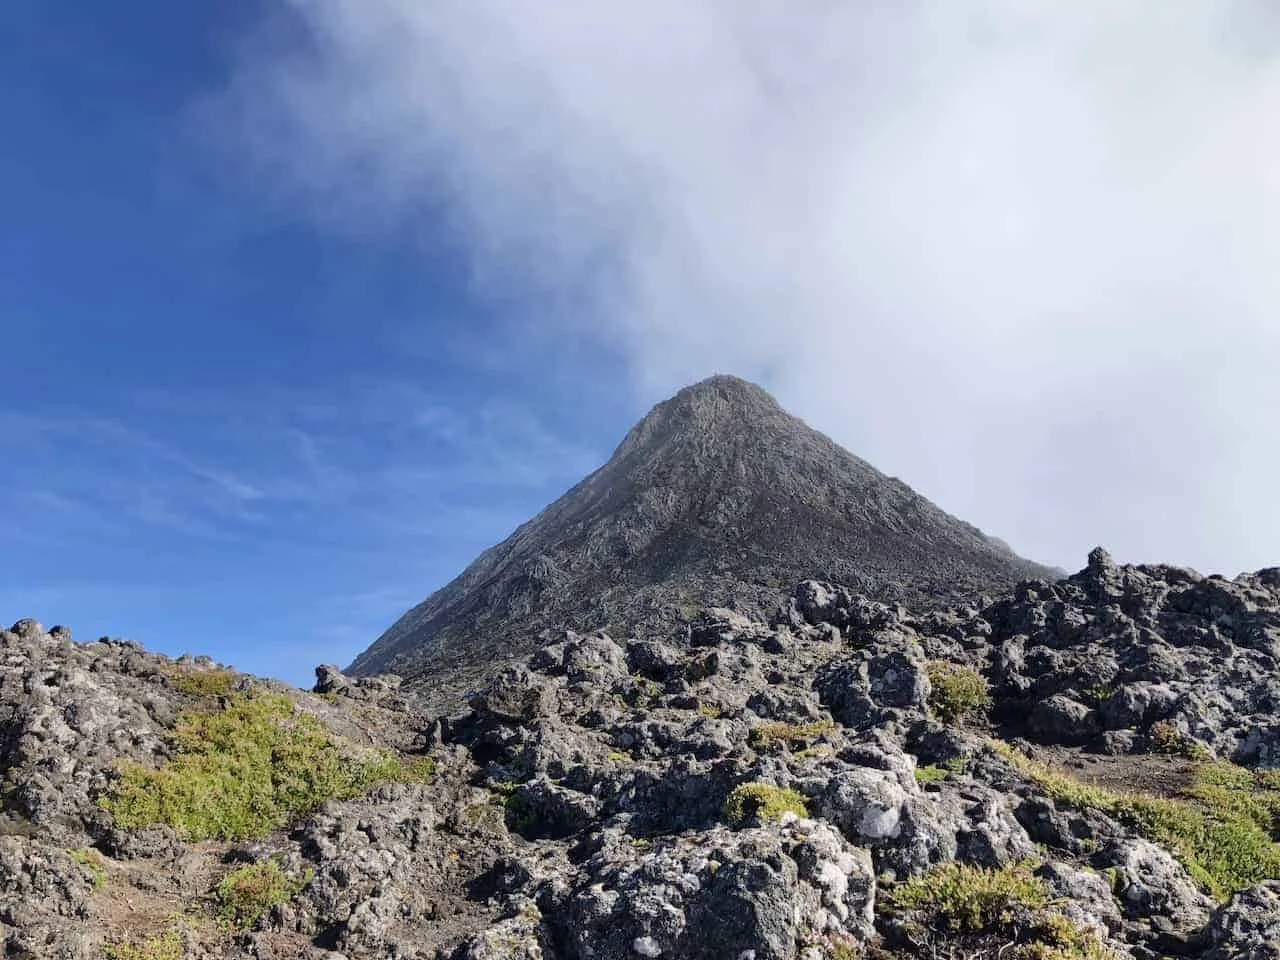 Mount Pico Piquinho